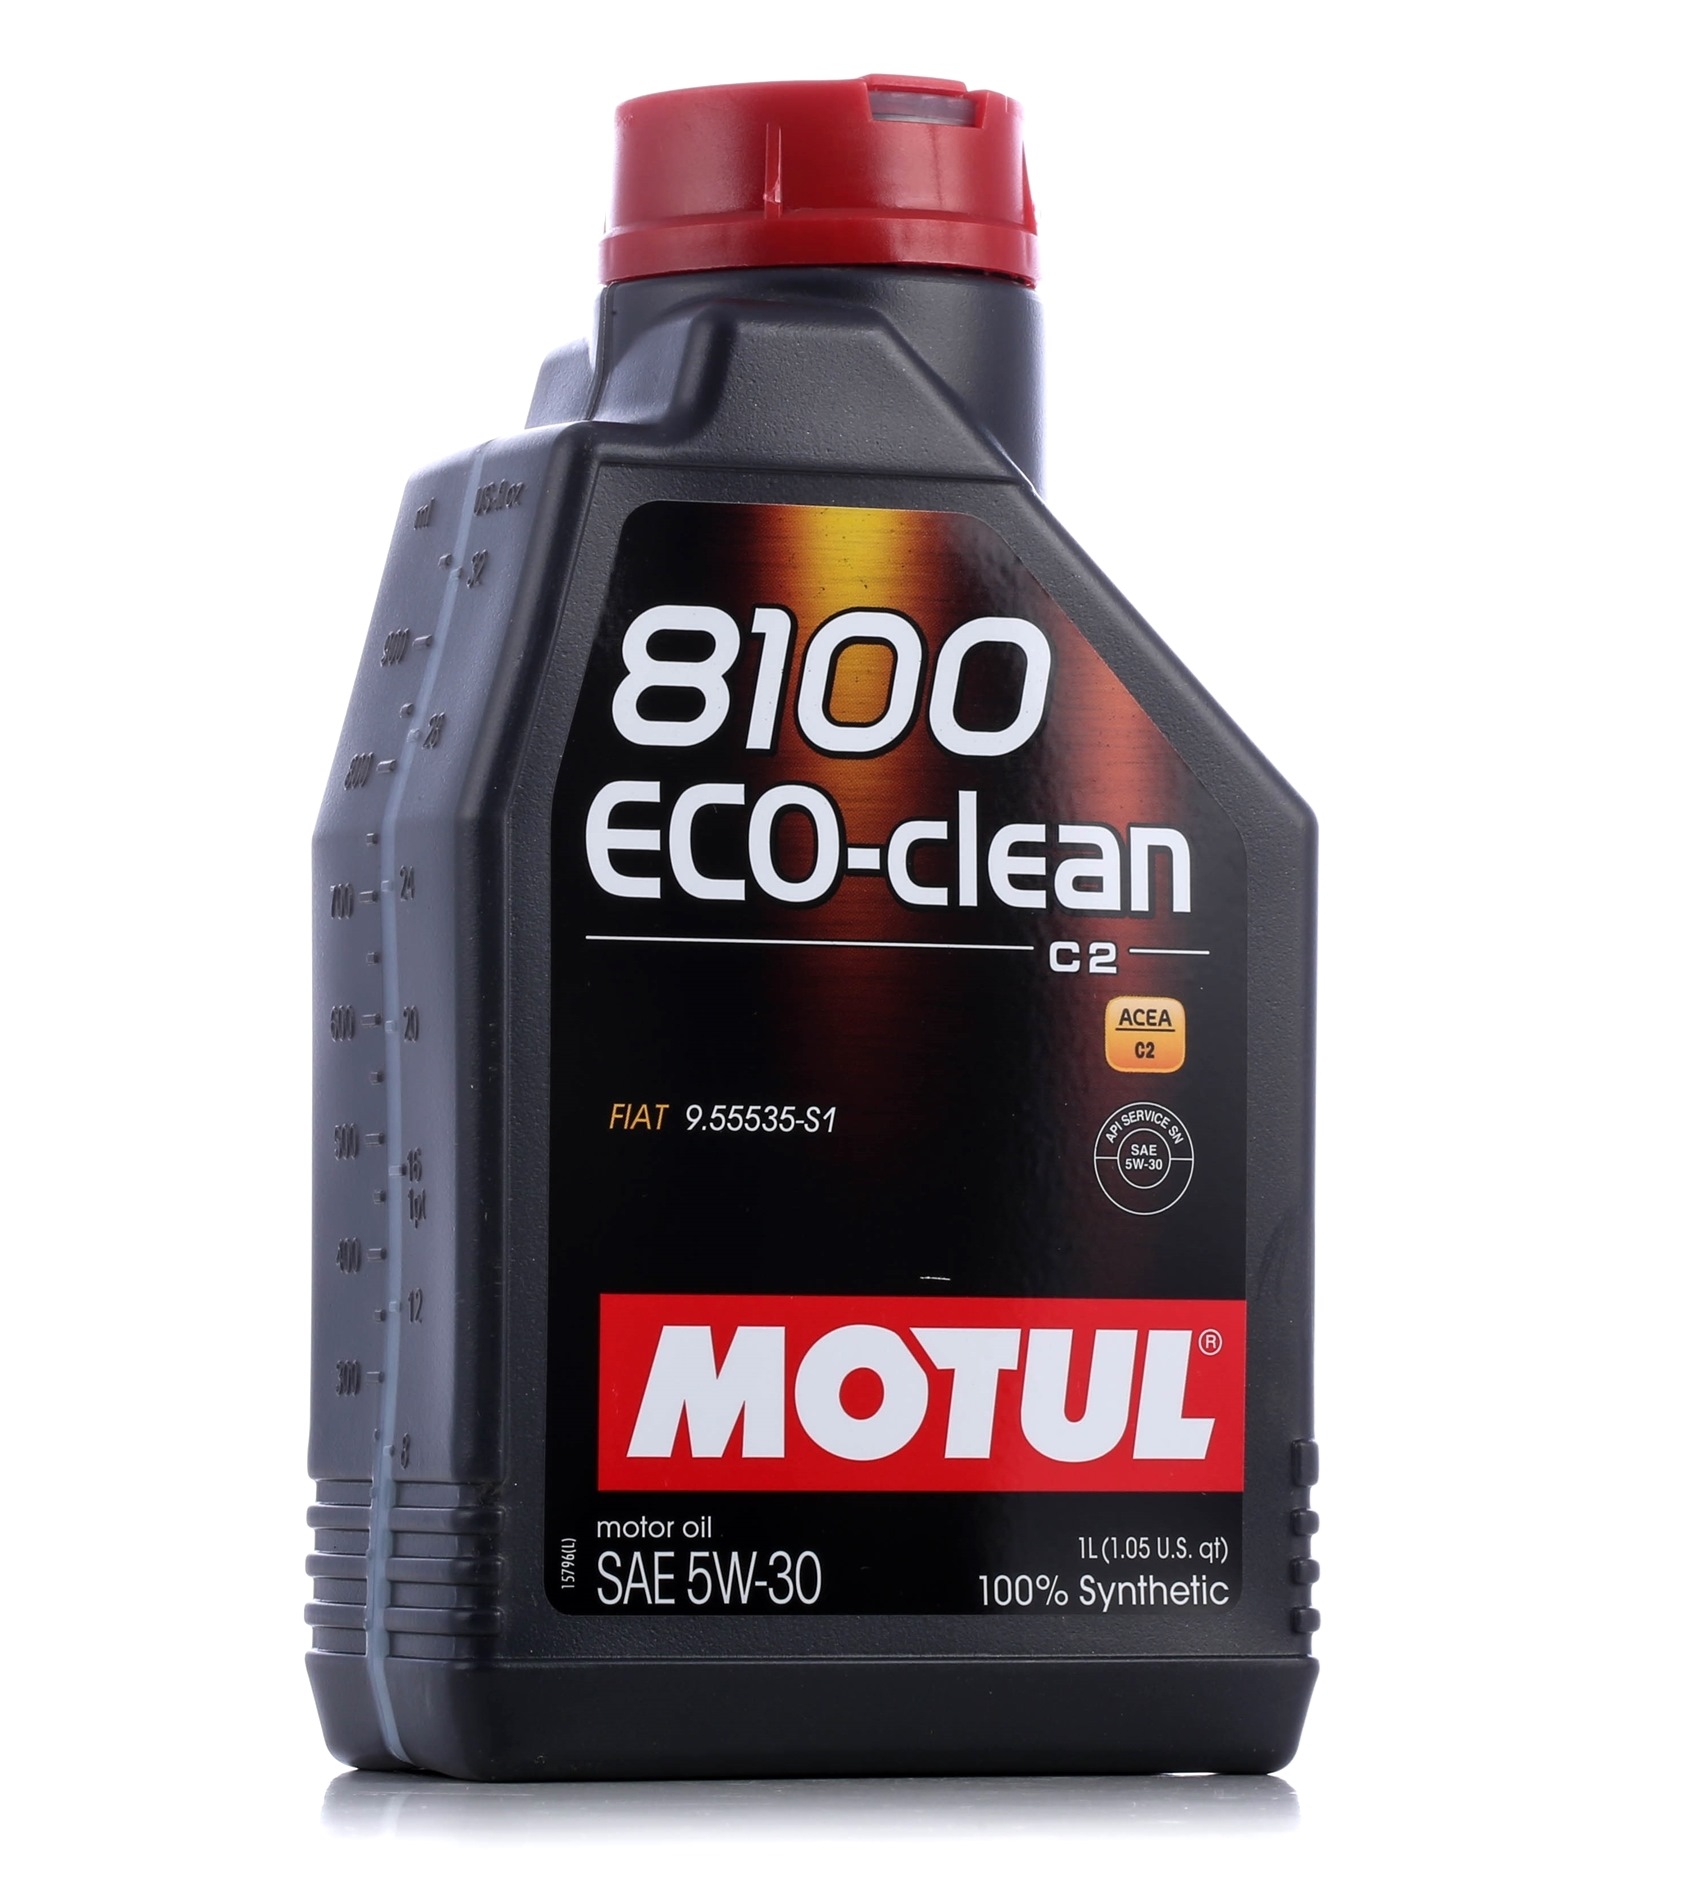 Motor oil MOTUL 5W-30, 1l, Synthetic Oil longlife 101542